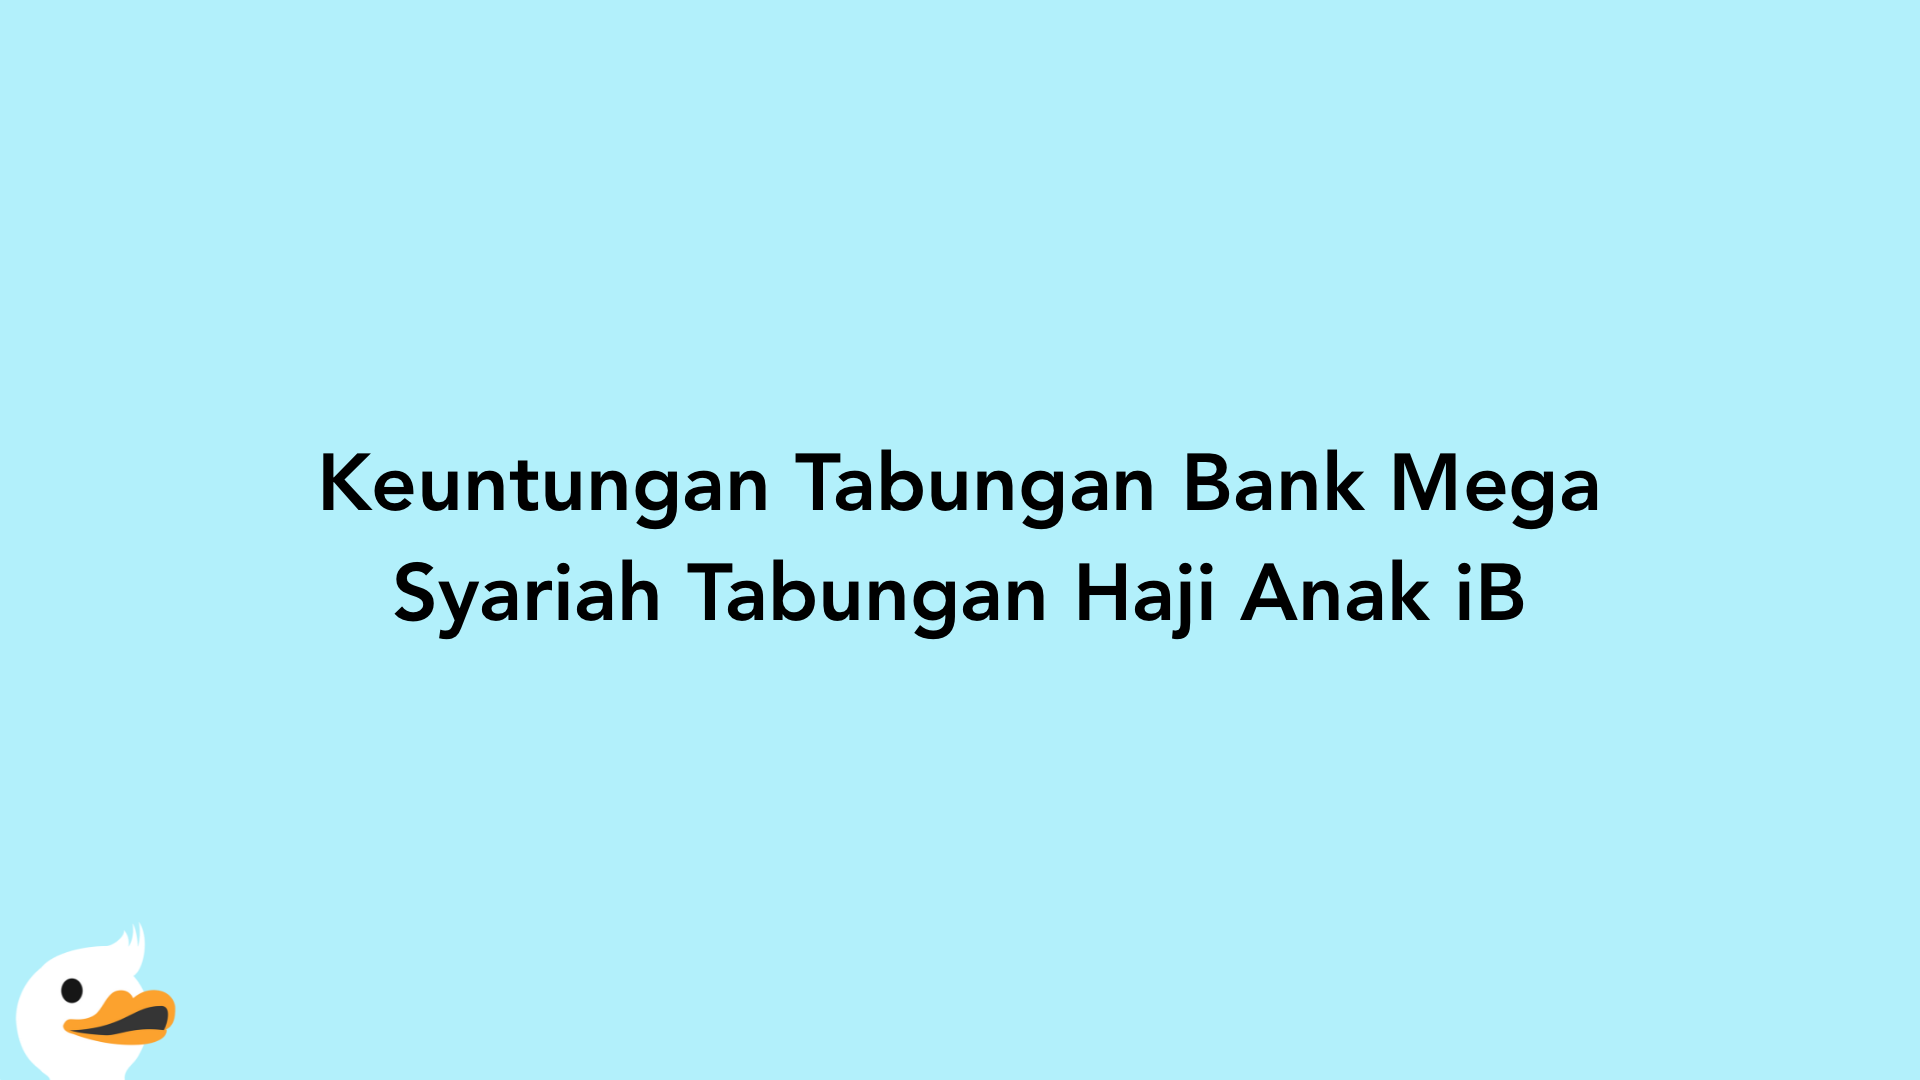 Keuntungan Tabungan Bank Mega Syariah Tabungan Haji Anak iB